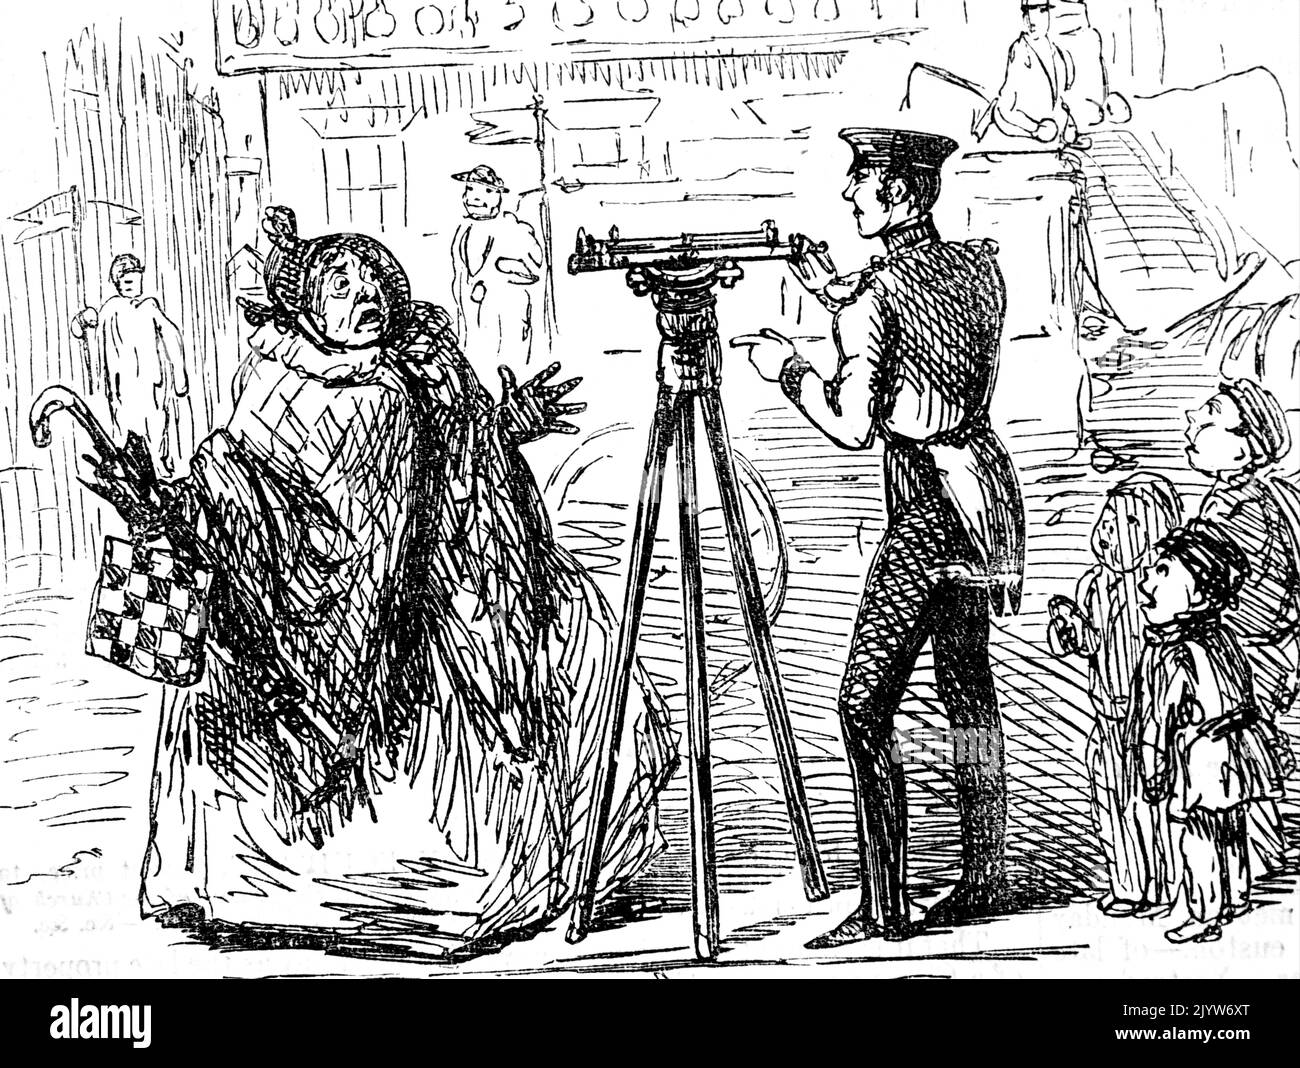 Caricature de John Leech (1817-1864) caricaturiste et illustrateur anglais. Daté du 19th siècle Banque D'Images